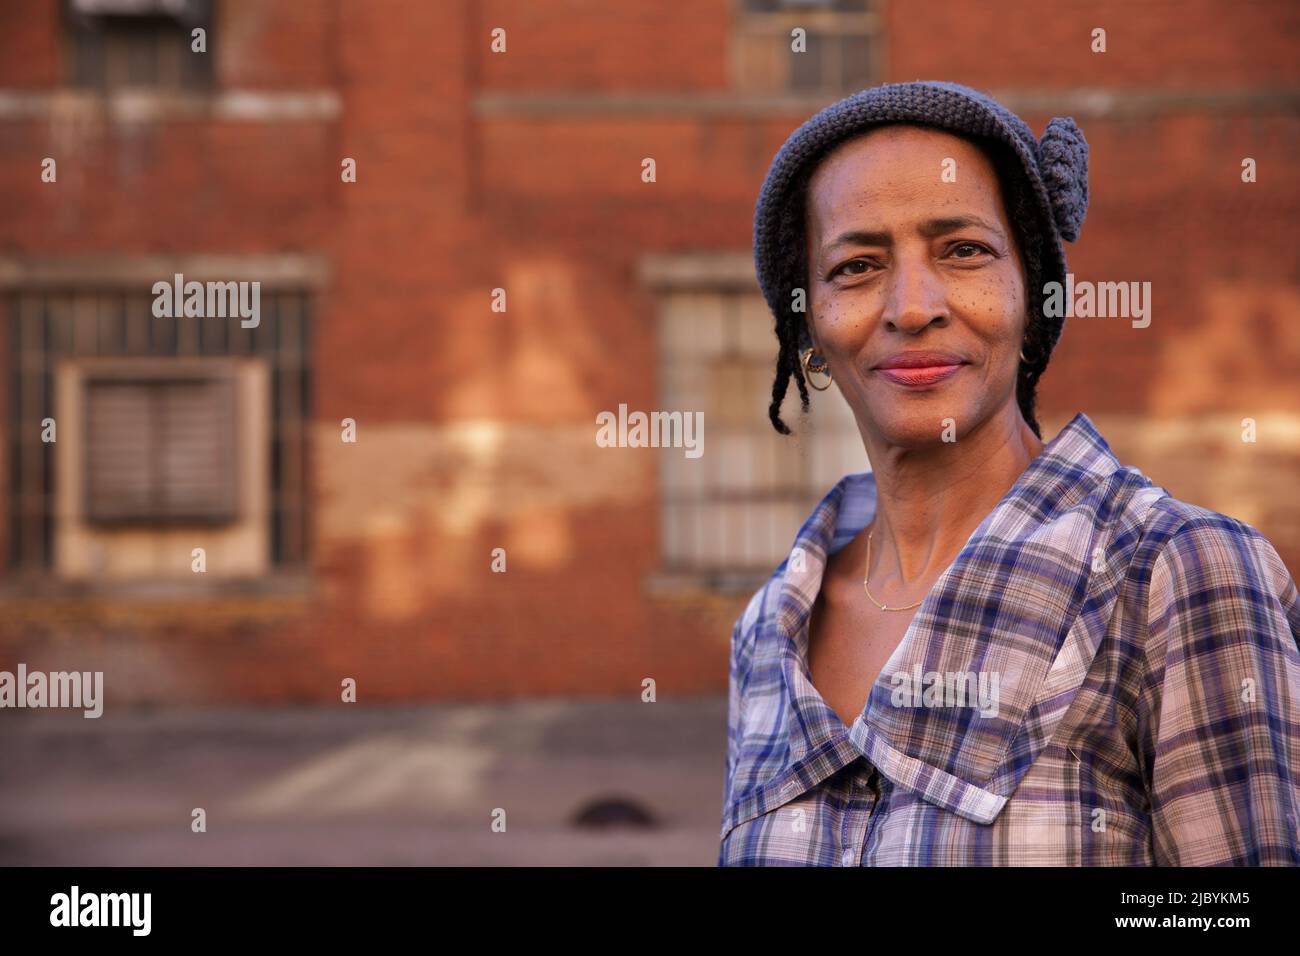 Portrait d'une femme plus âgée portant un chapeau en tricot debout dans une allée souriante regardant l'appareil photo, mur de briques en arrière-plan Banque D'Images